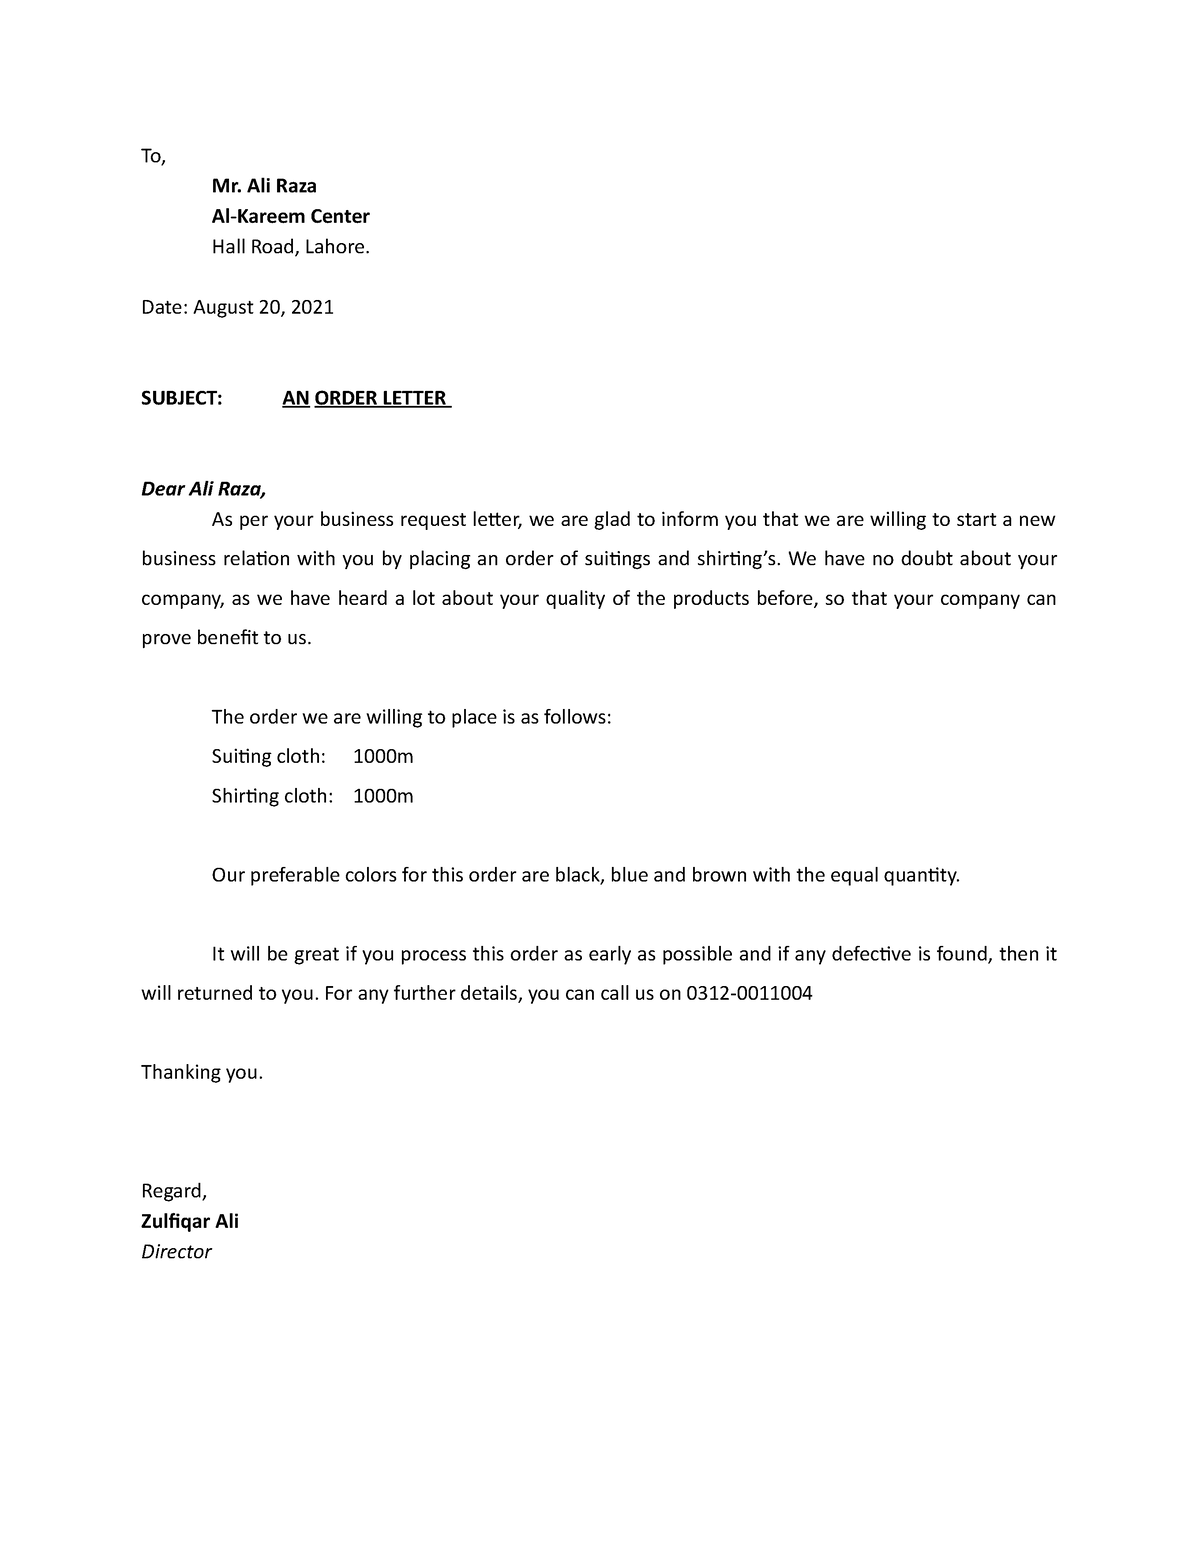 03-order letter completely - To, Mr. Ali Raza Al-Kareem Center Hall ...